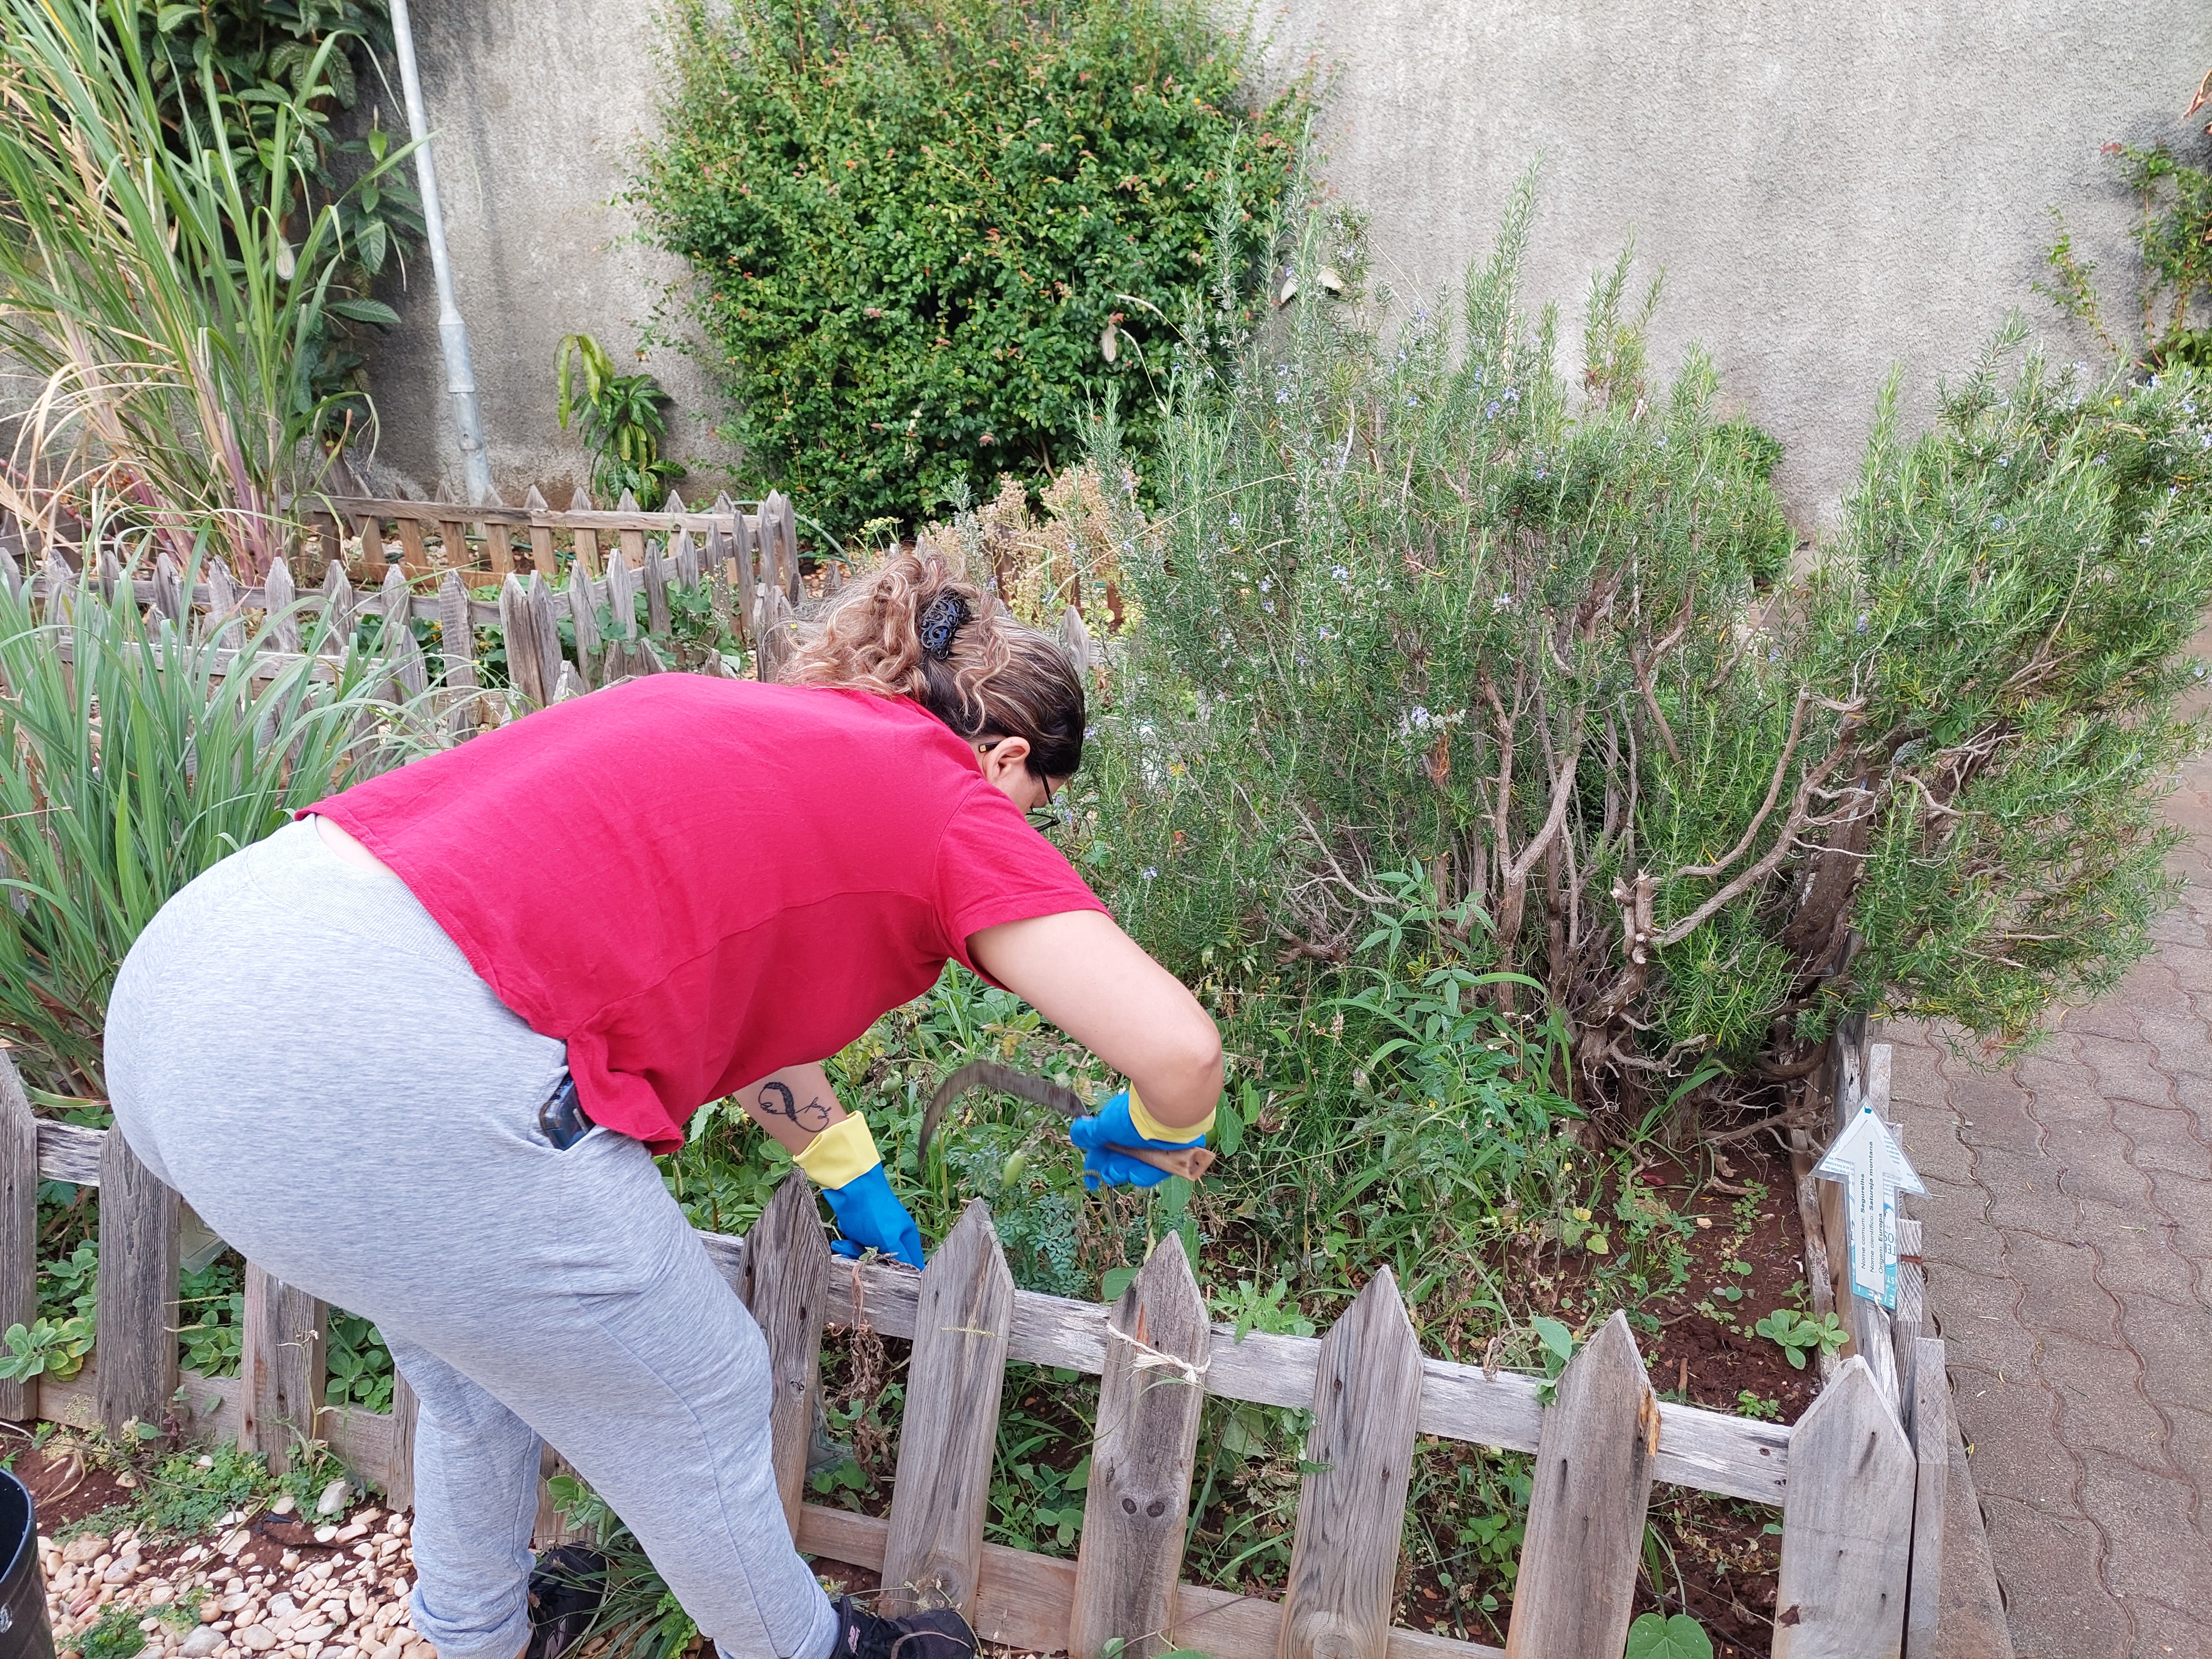 Limpeza da horta
Remoção das ervas daninhas por beneficiária da Mercearia Social